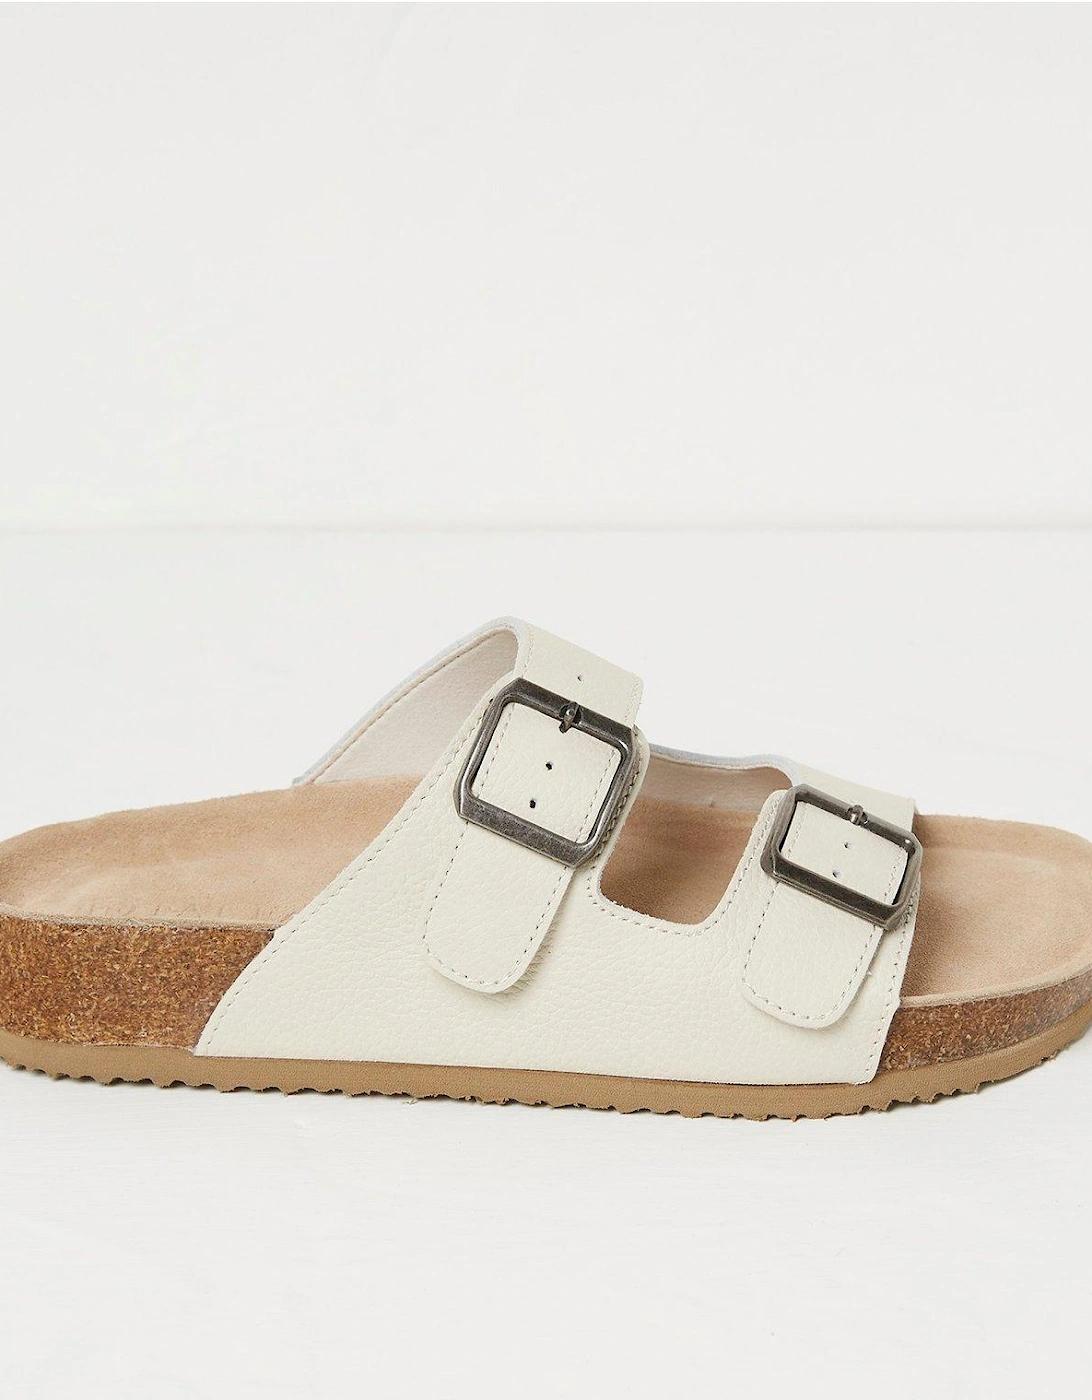 Meldon Footbed Sandal - White, 2 of 1